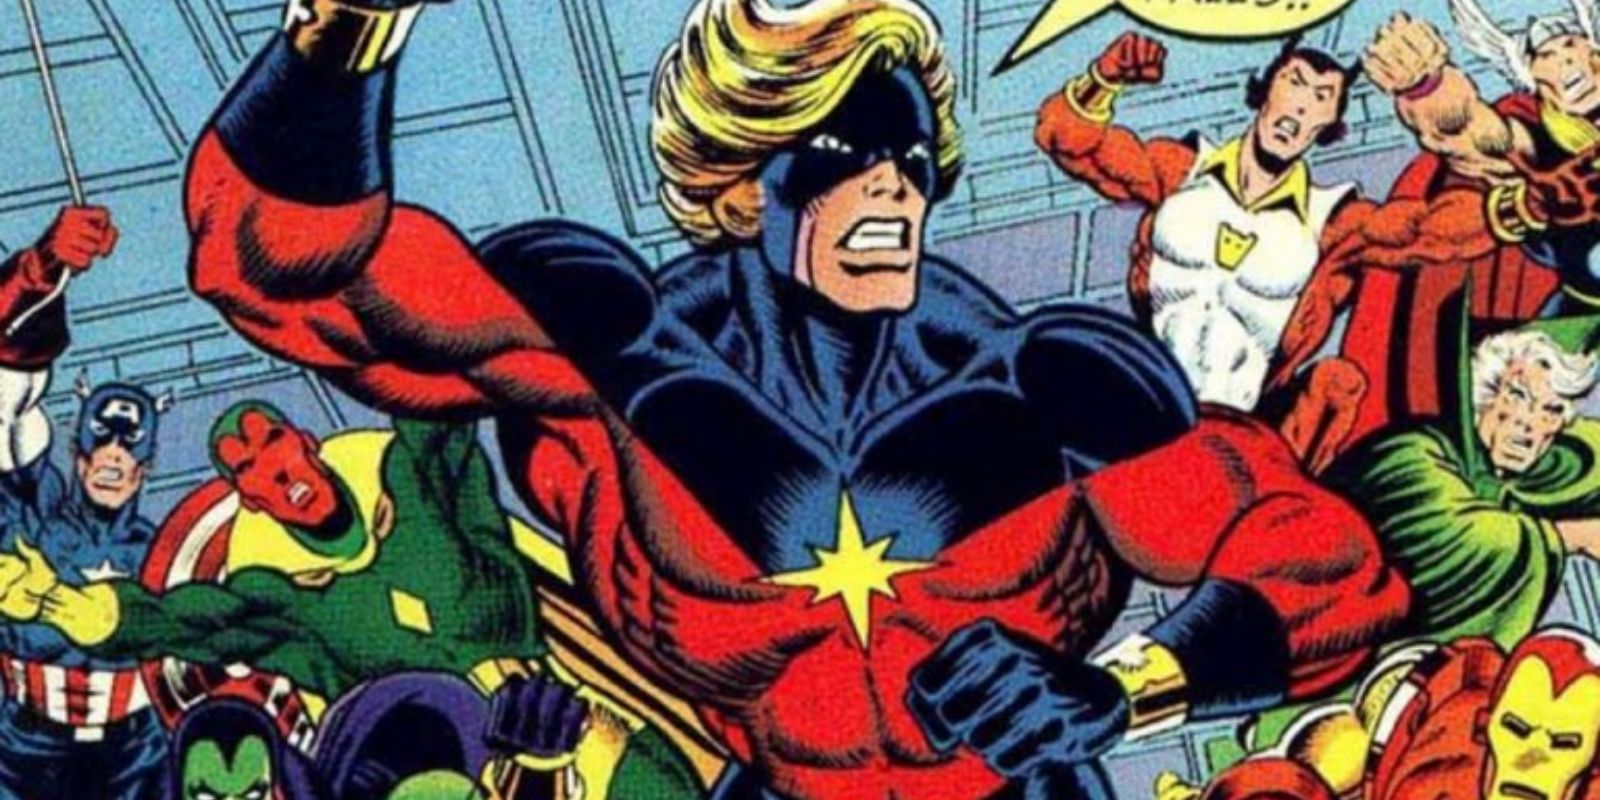 Mar-Vell, aka, Captain Marvel leads the Avengers into battle in Marvel Comics